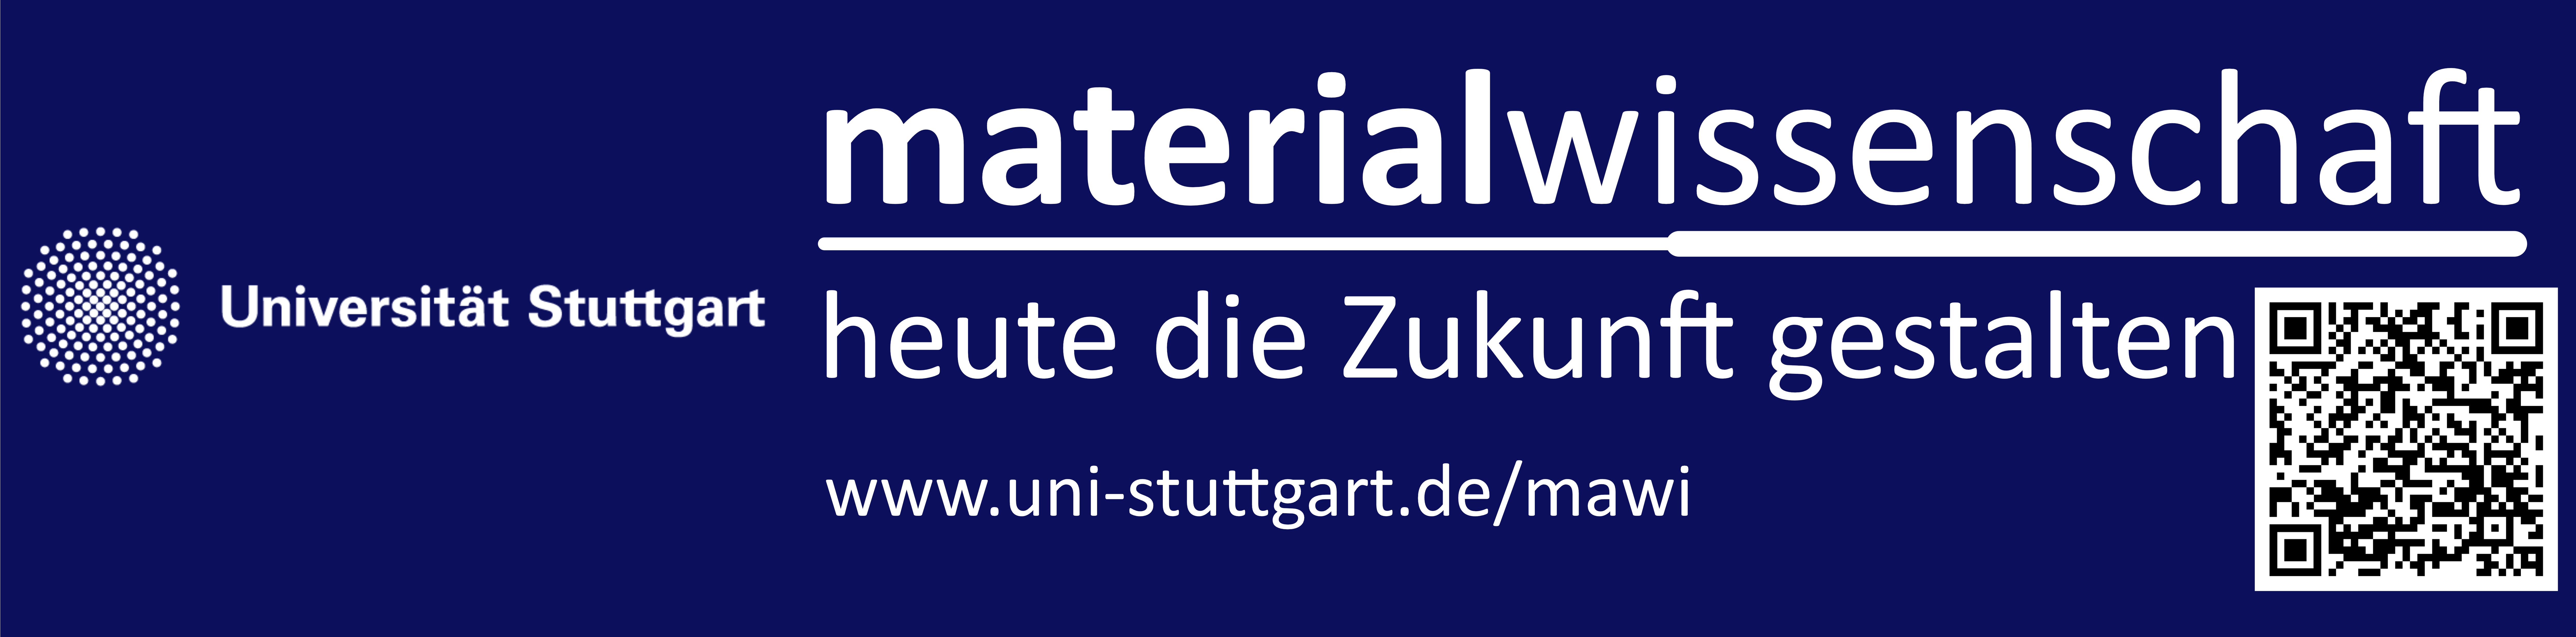 Universität Stuttgart/Institut für Materialwissenschaft Logo